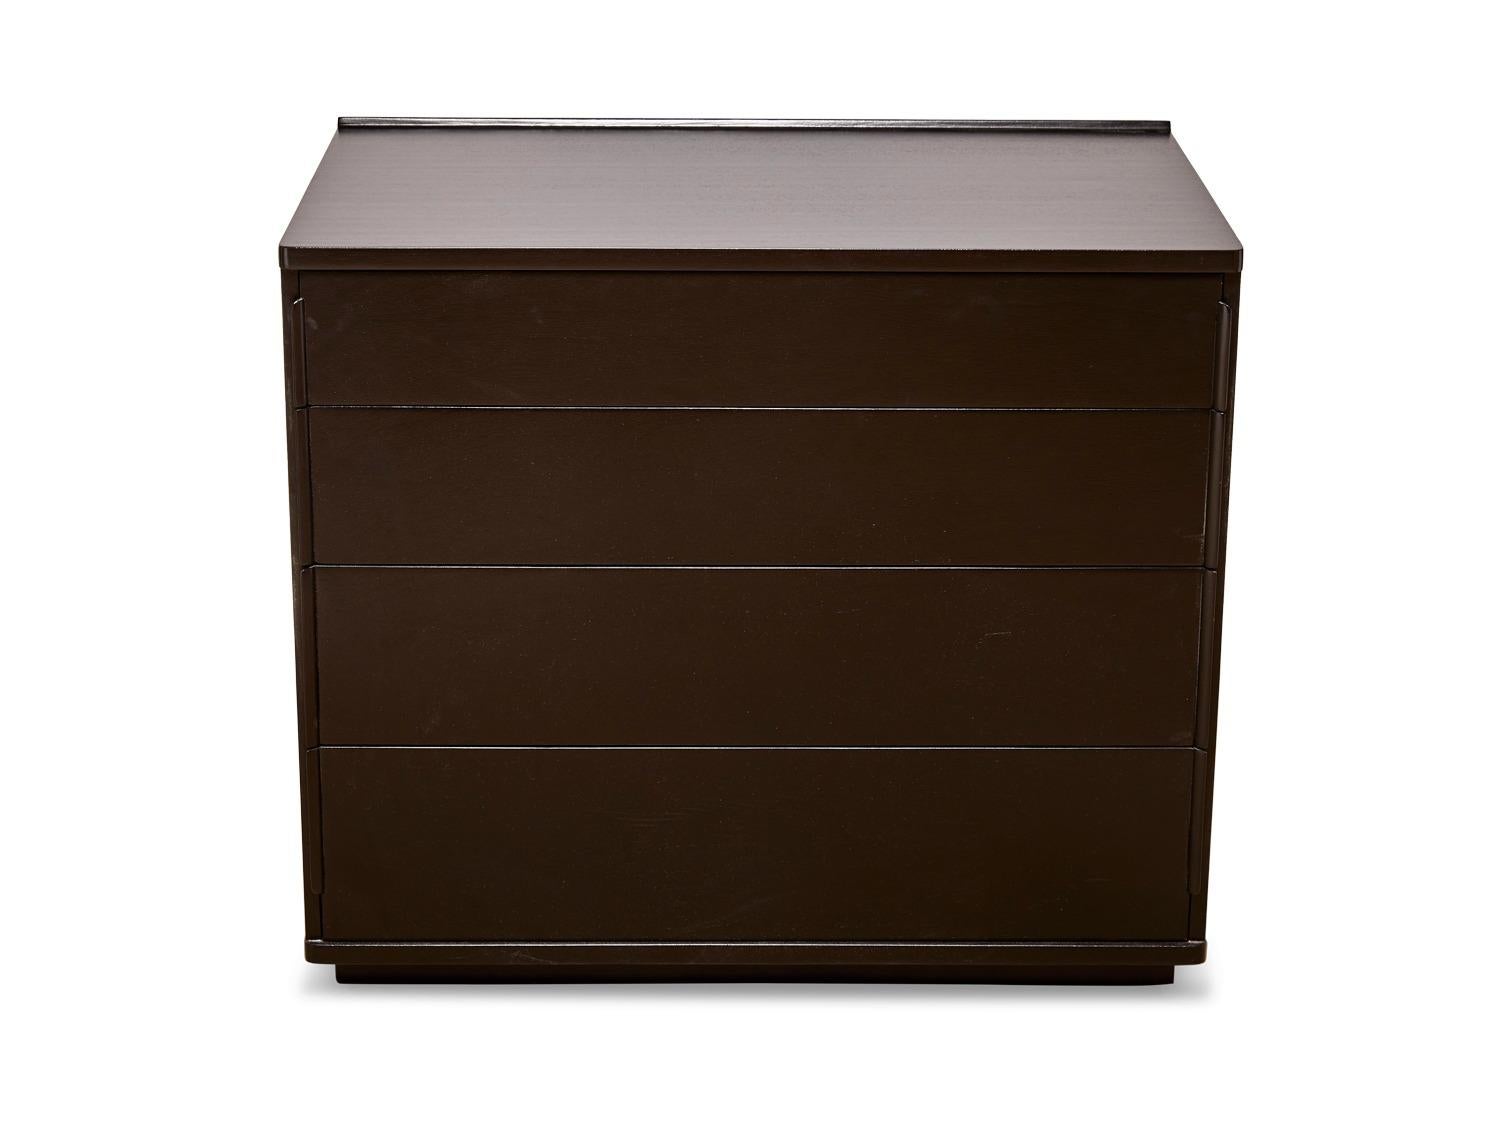 Dunbar 4-drawer chest. Dimensions: 34 W x 21 D x 29.5 H.